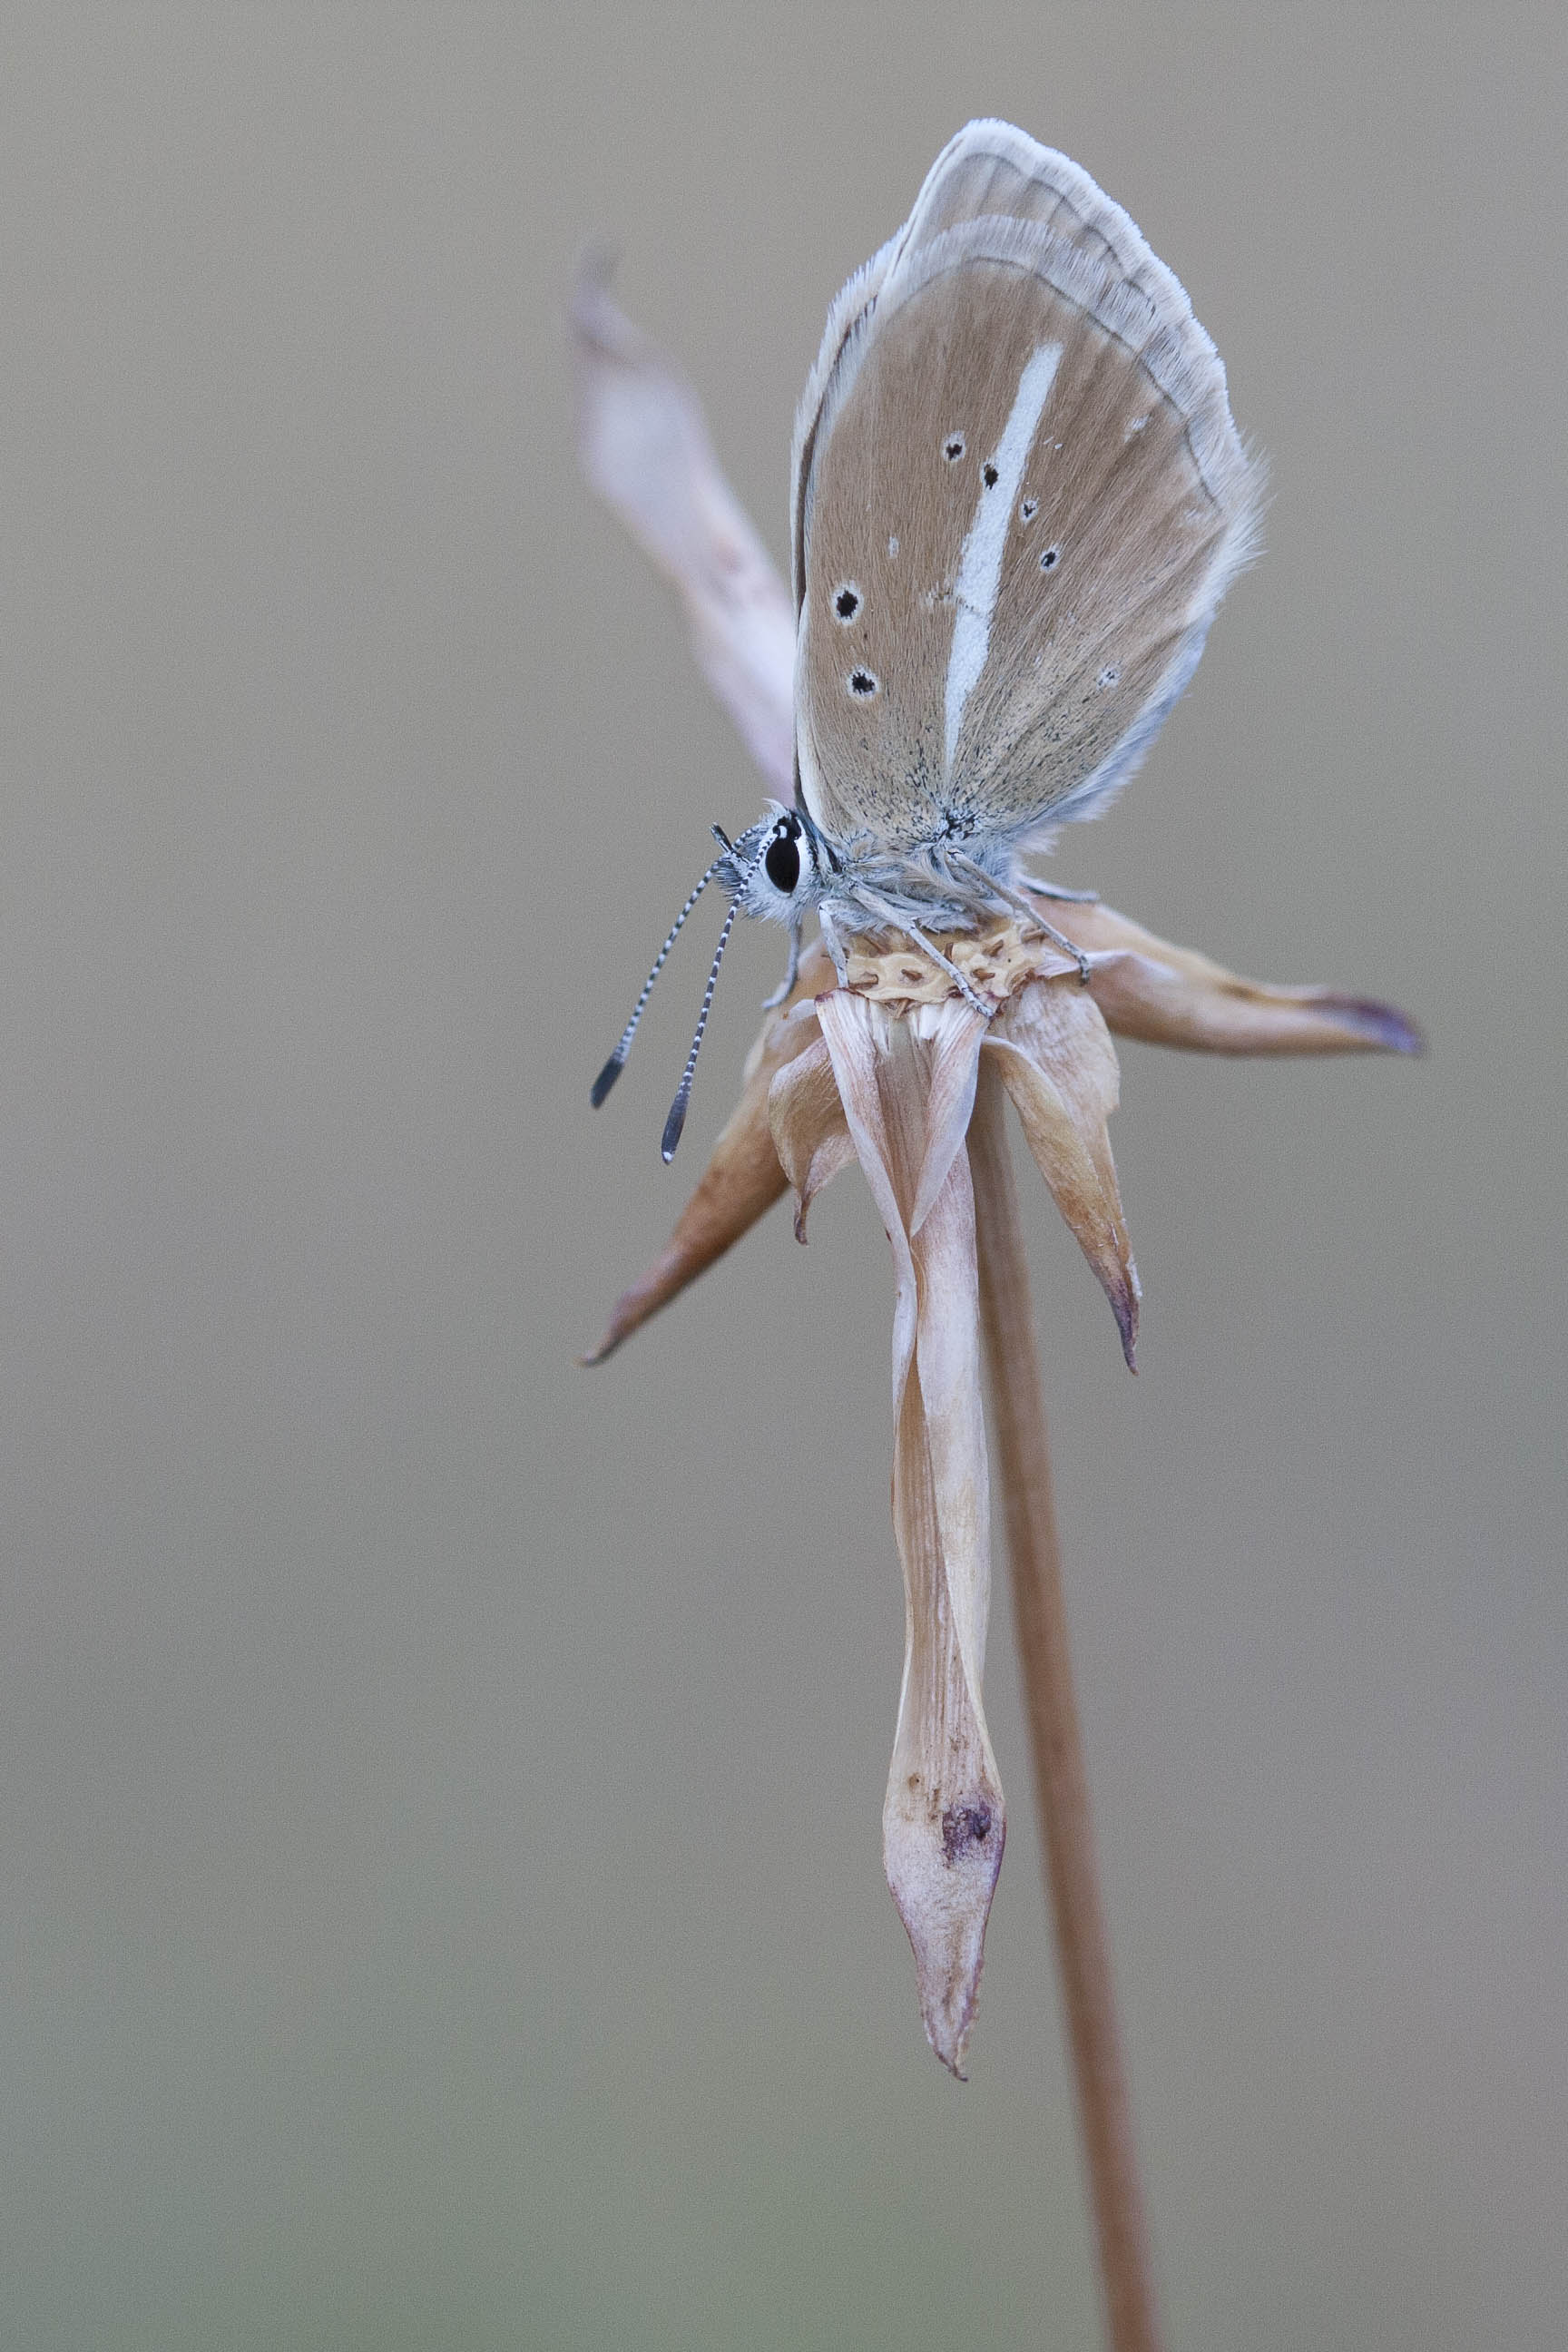 Witstreepblauwtje  - Polyommatus damon